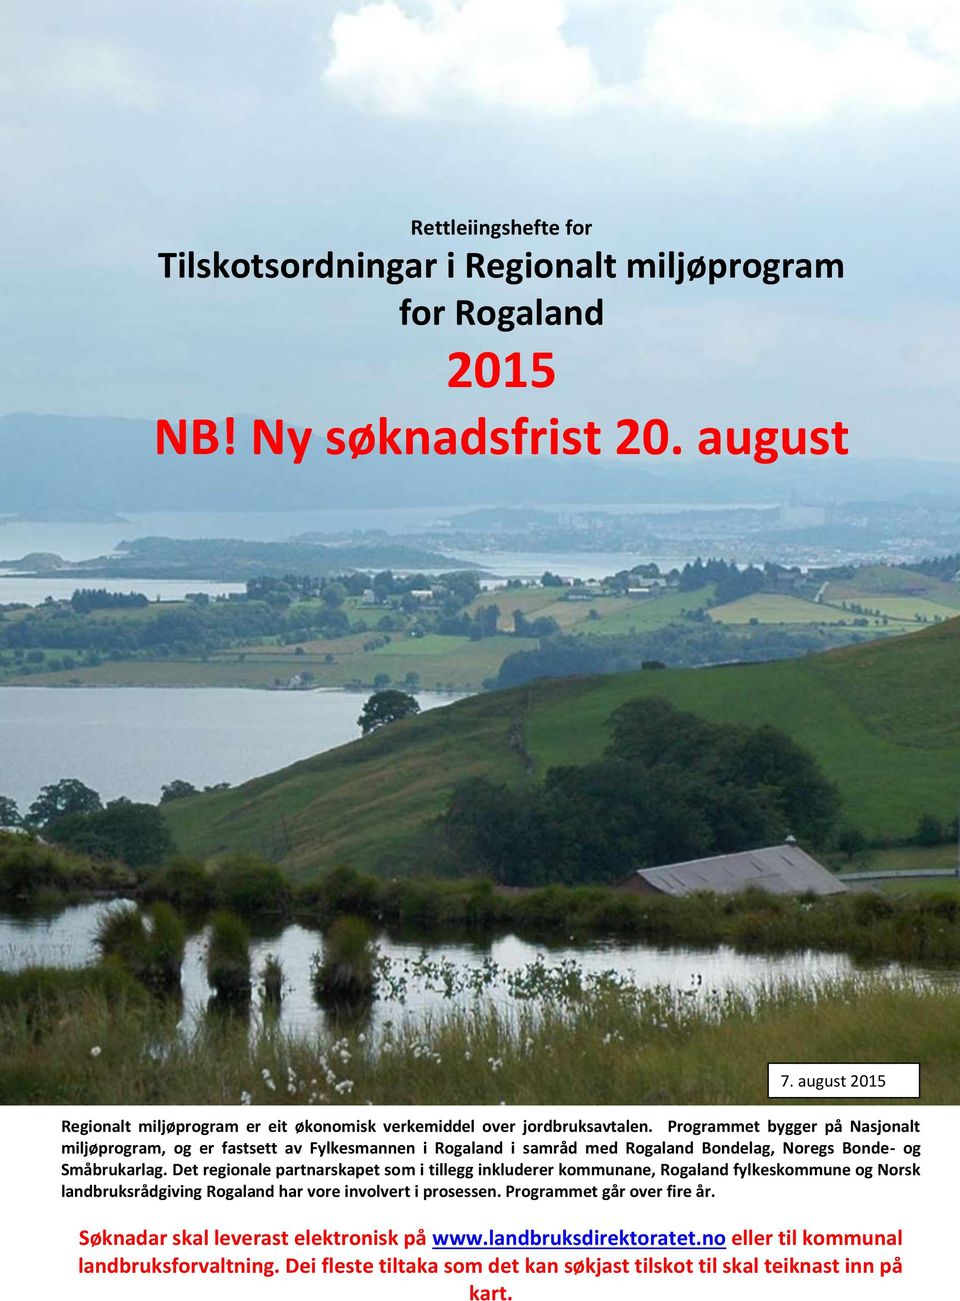 Programmet bygger på Nasjonalt miljøprogram, og er fastsett av Fylkesmannen i Rogaland i samråd med Rogaland Bondelag, Noregs Bonde- og Småbrukarlag.